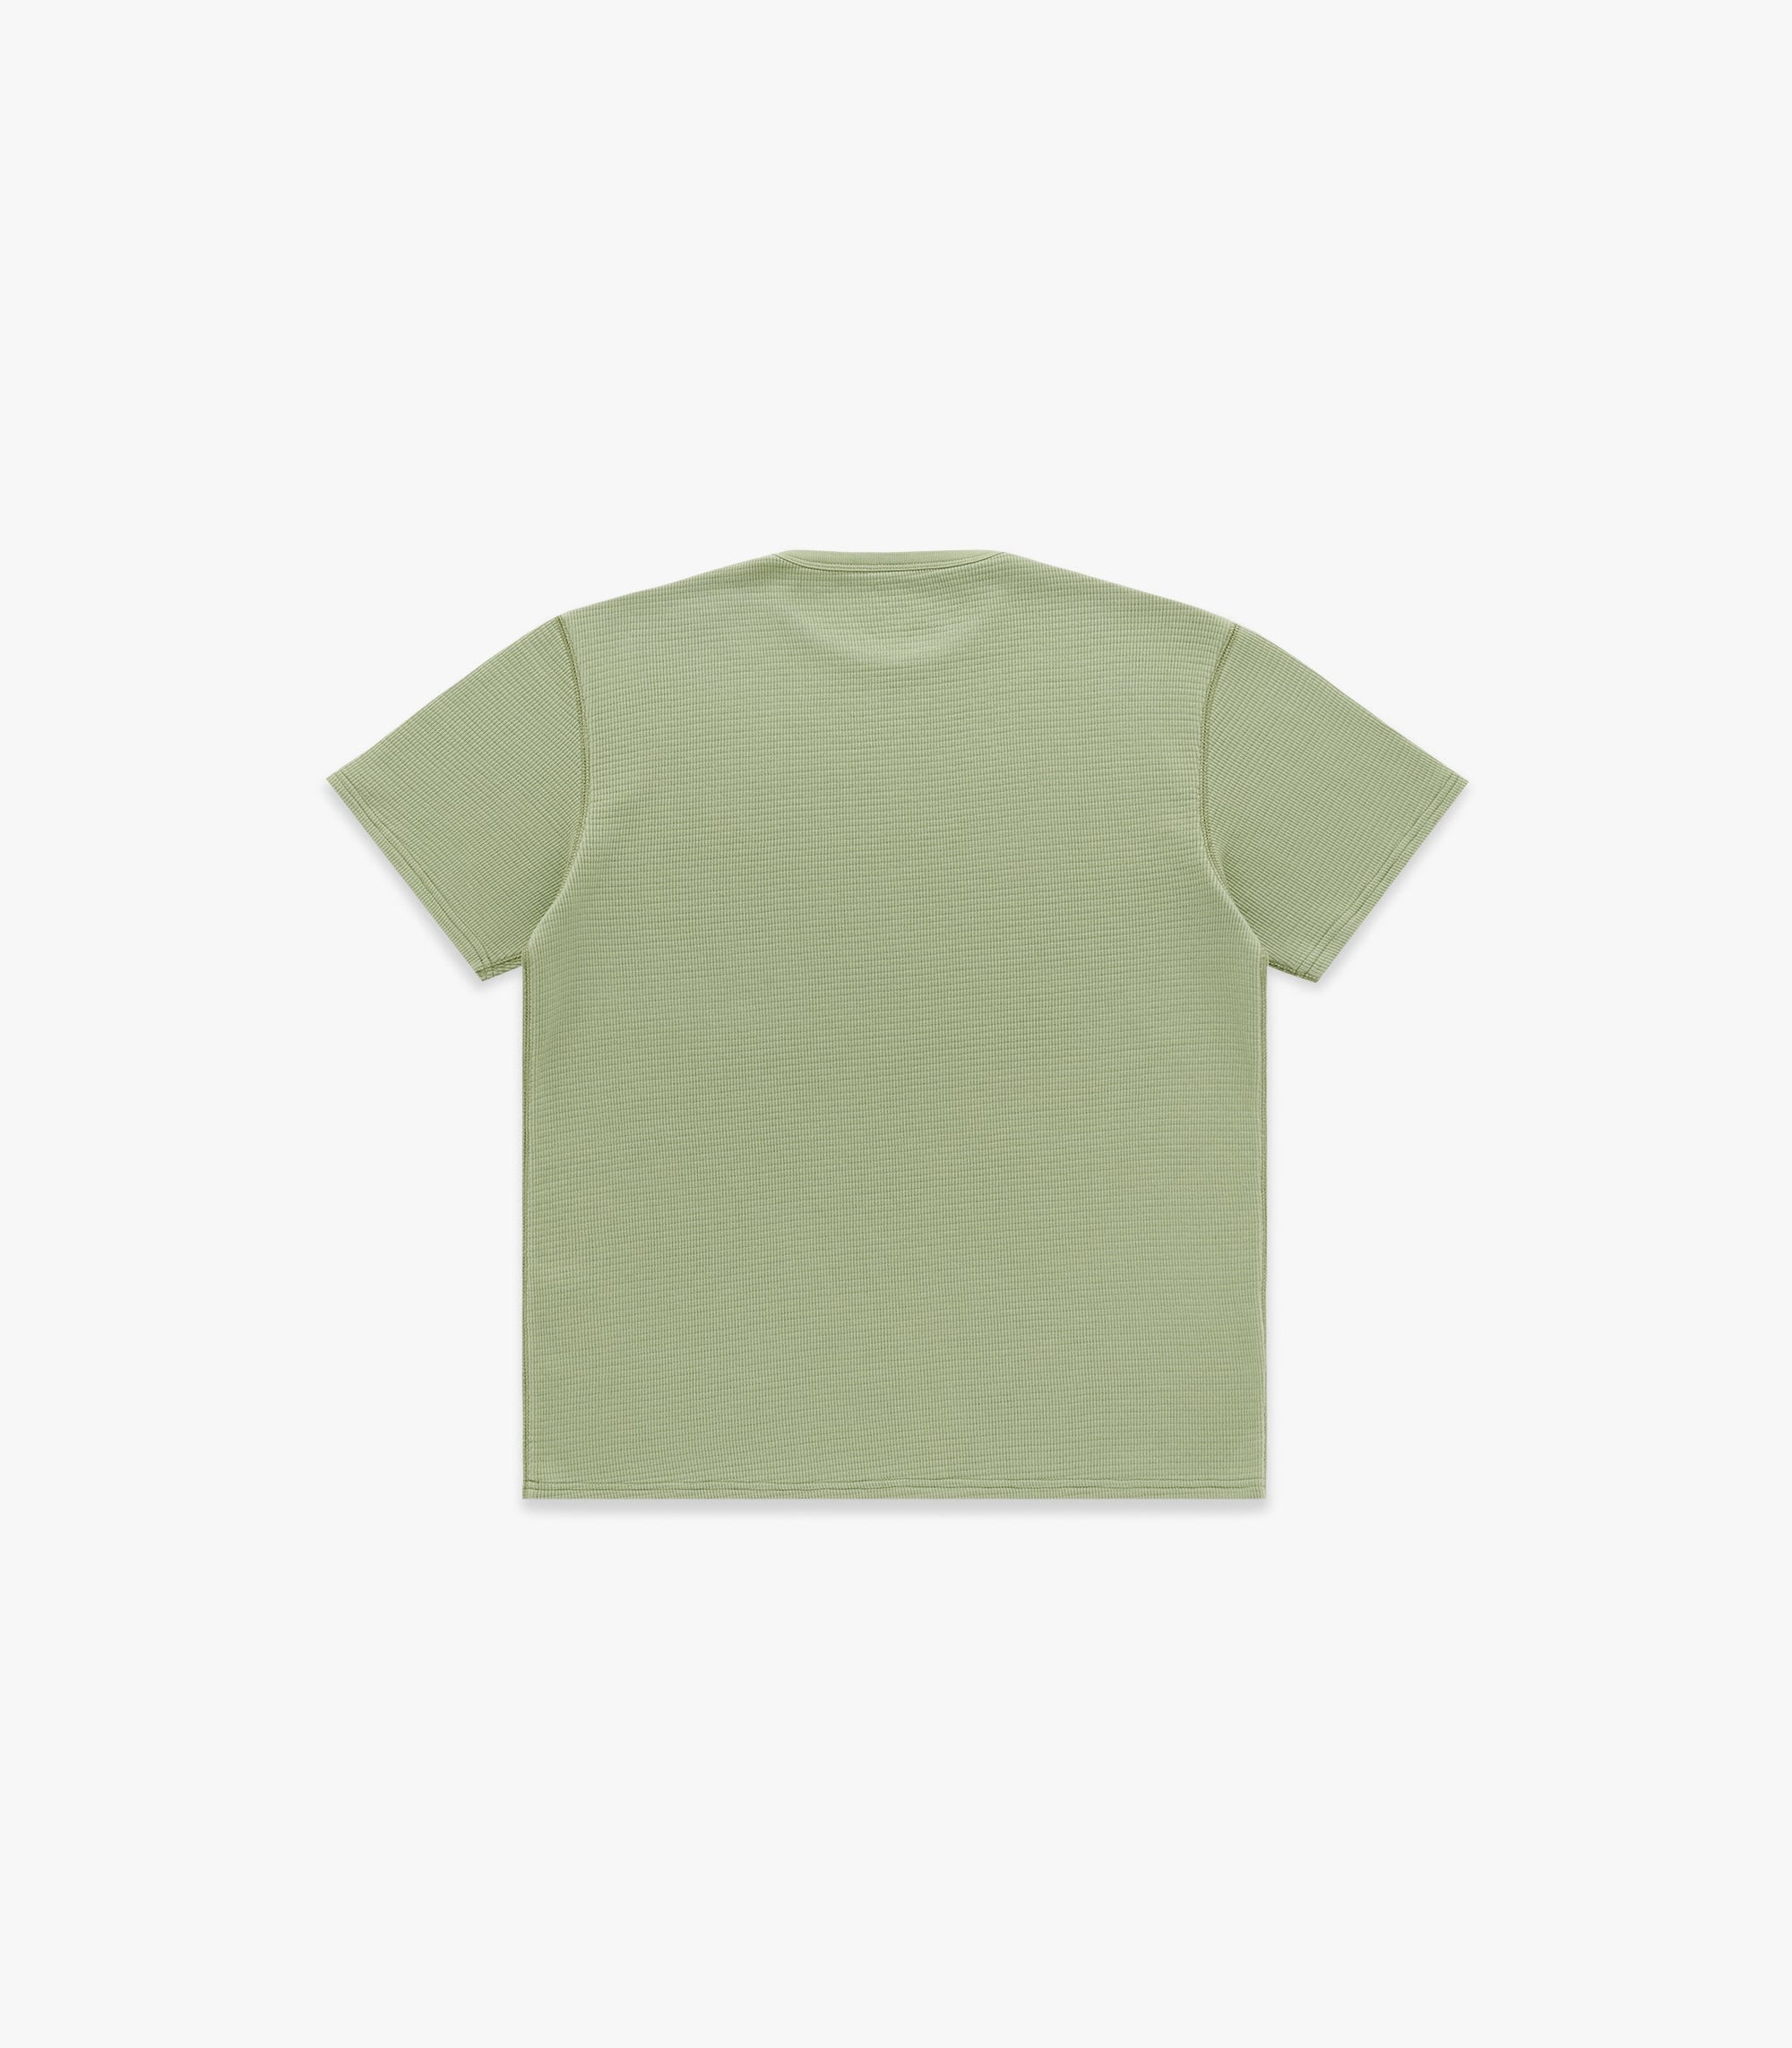 Knickerbocker Box Knit T-Shirt - Green